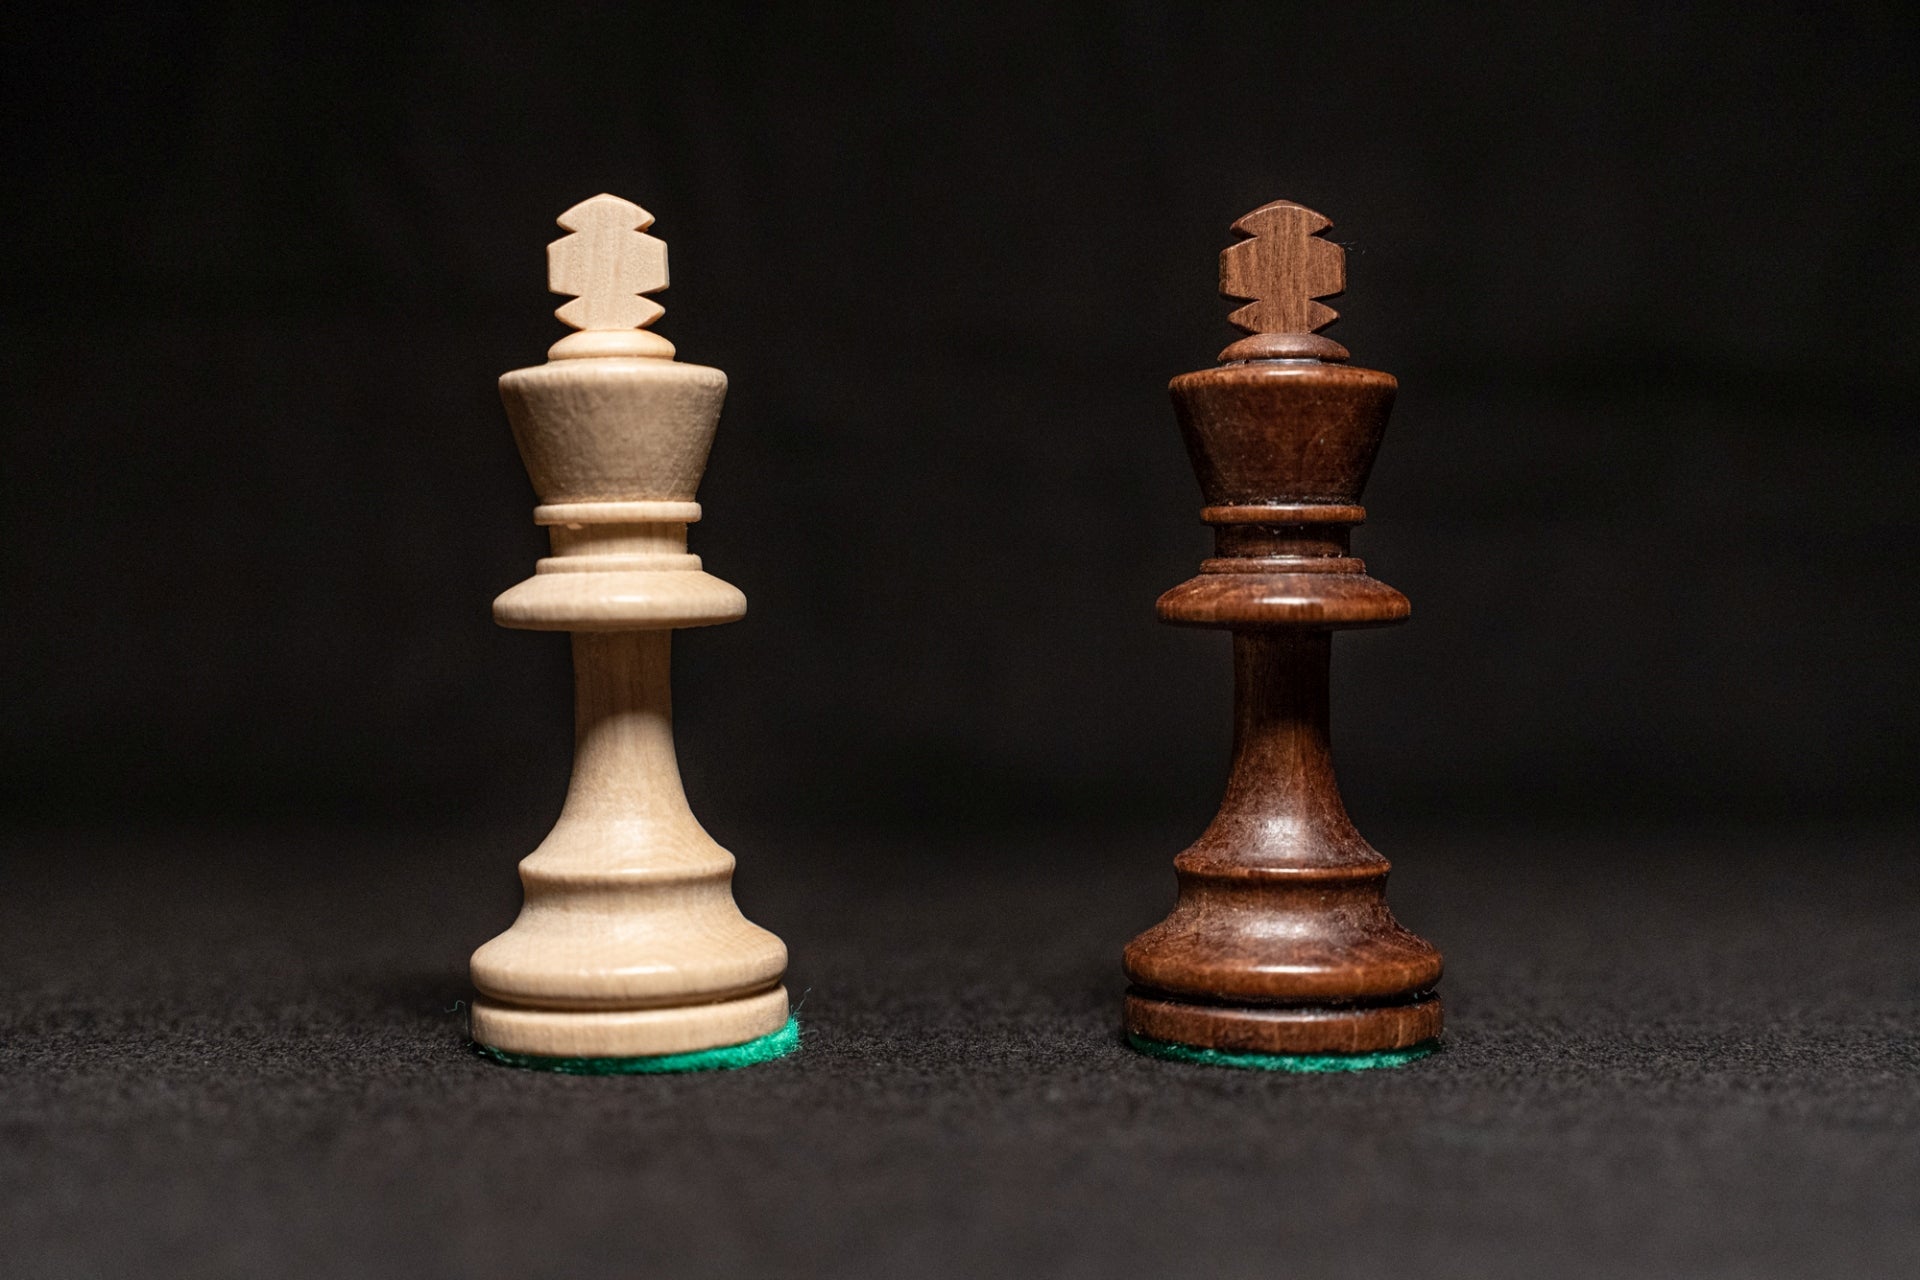 Zwei Schach Stück Könige und 2 Damen auf dem Schachbrett